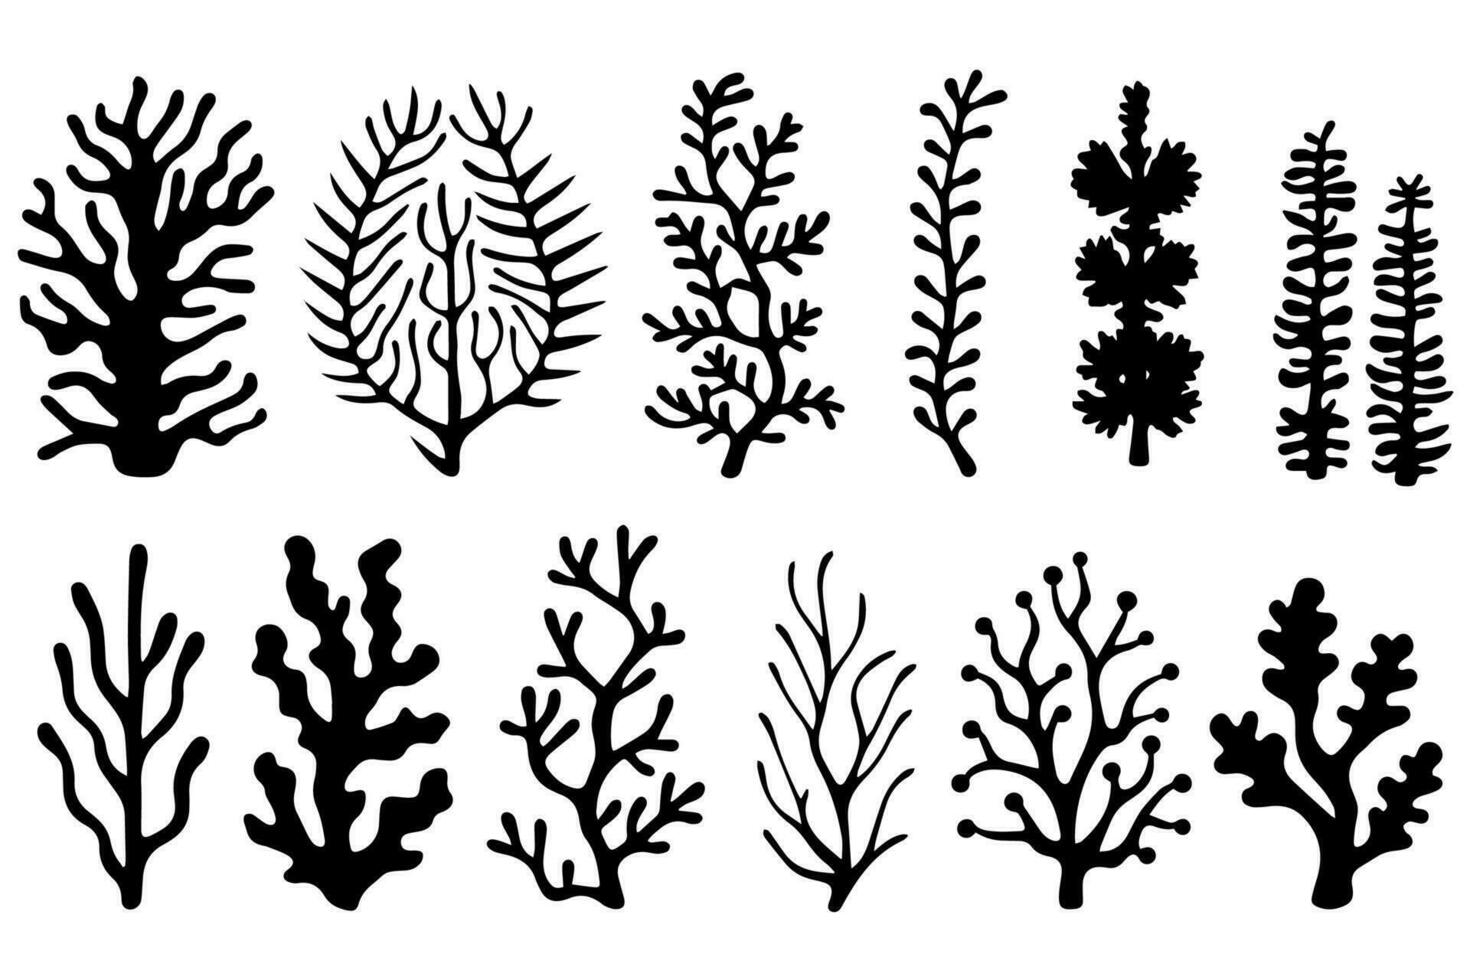 mão desenhado conjunto do corais e algas marinhas silhueta isolado em branco fundo. vetor ícones e carimbo ilustração.